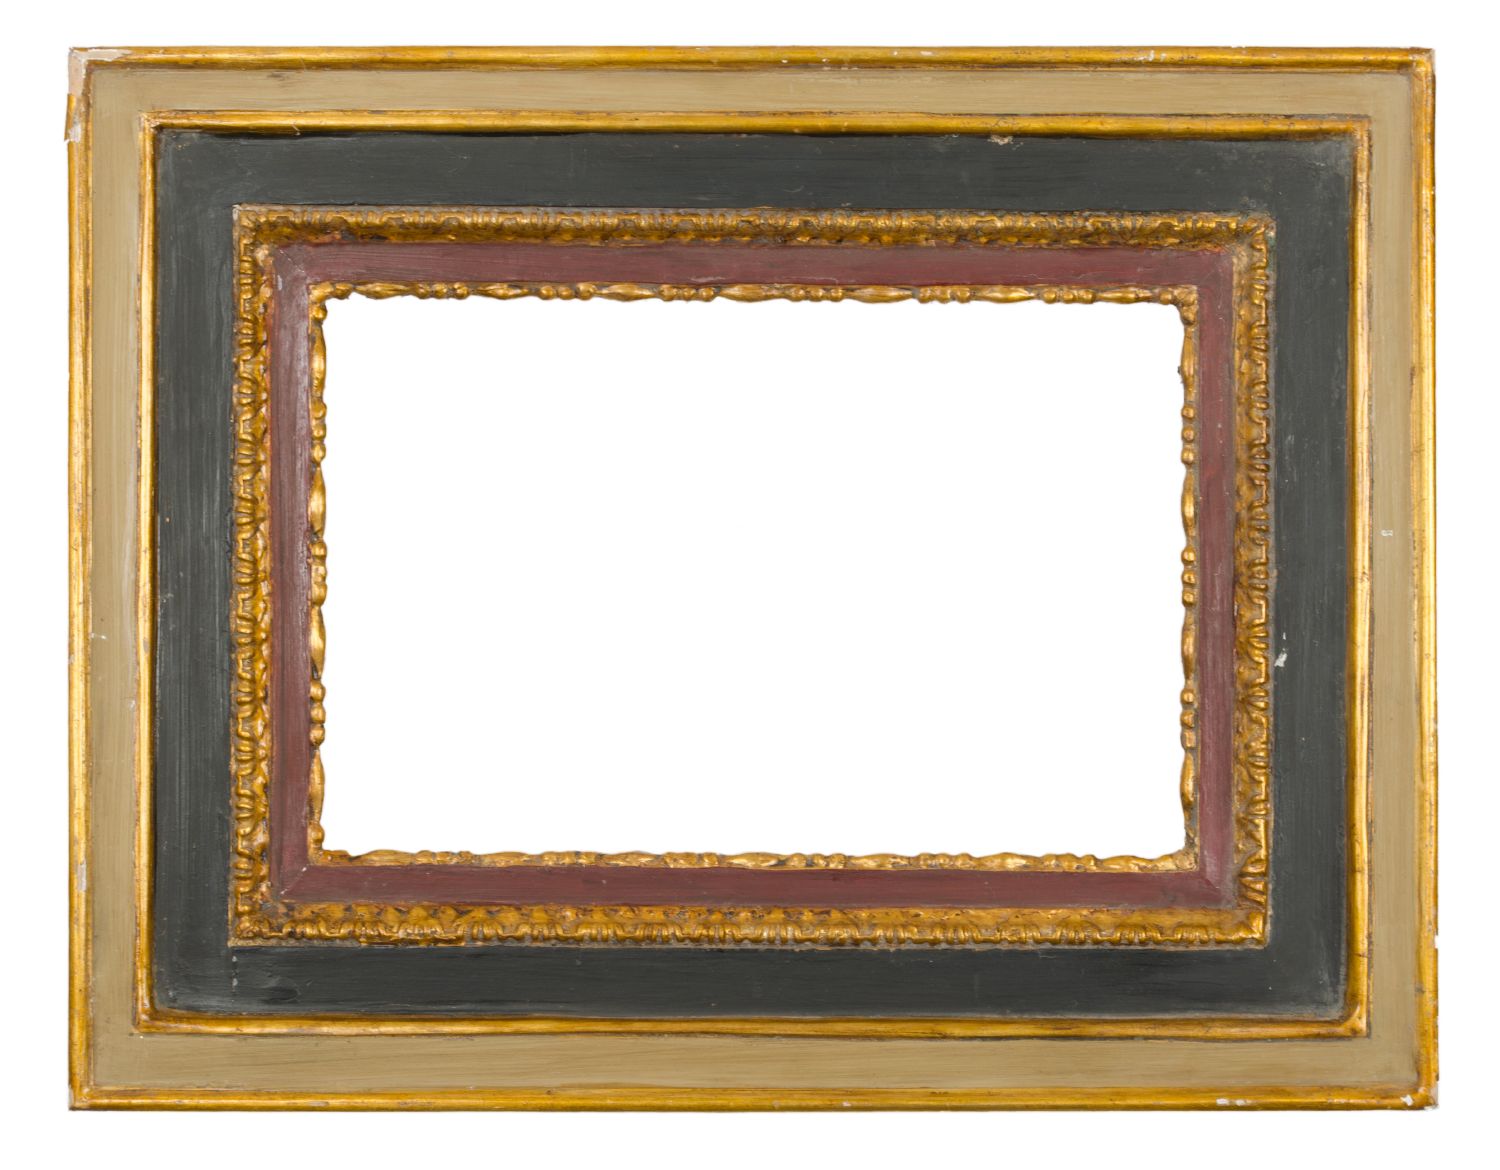 CORNICE in legno laccato e dorato (cm 44 x 29). Sicilia XIX secolo Misure: cm 52 x 67